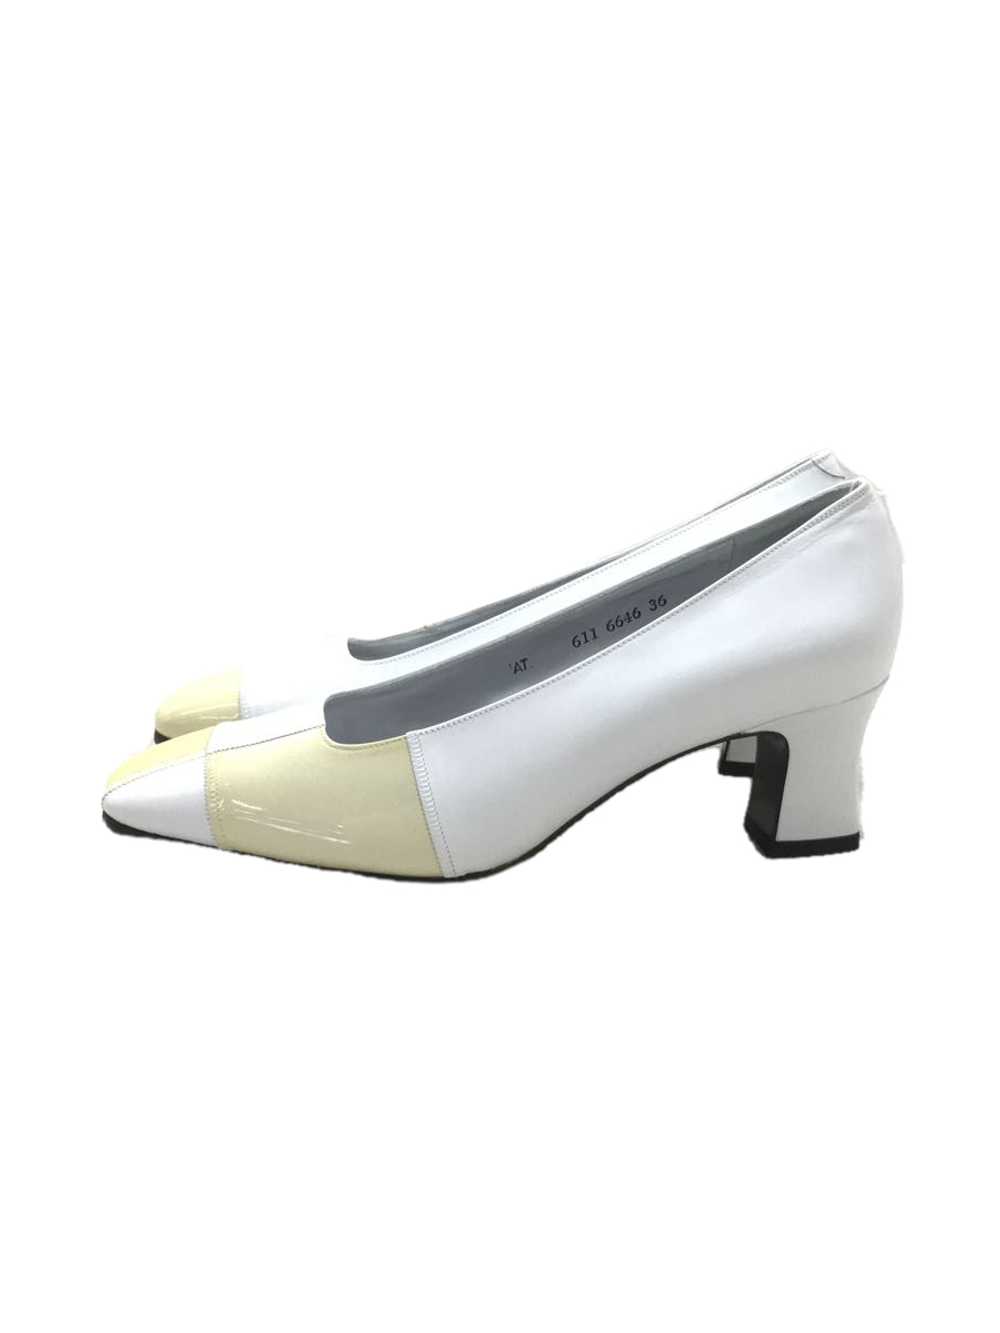 Yves Saint Laurent Flat Pumps/36/Crm Shoes BbX30 - image 1